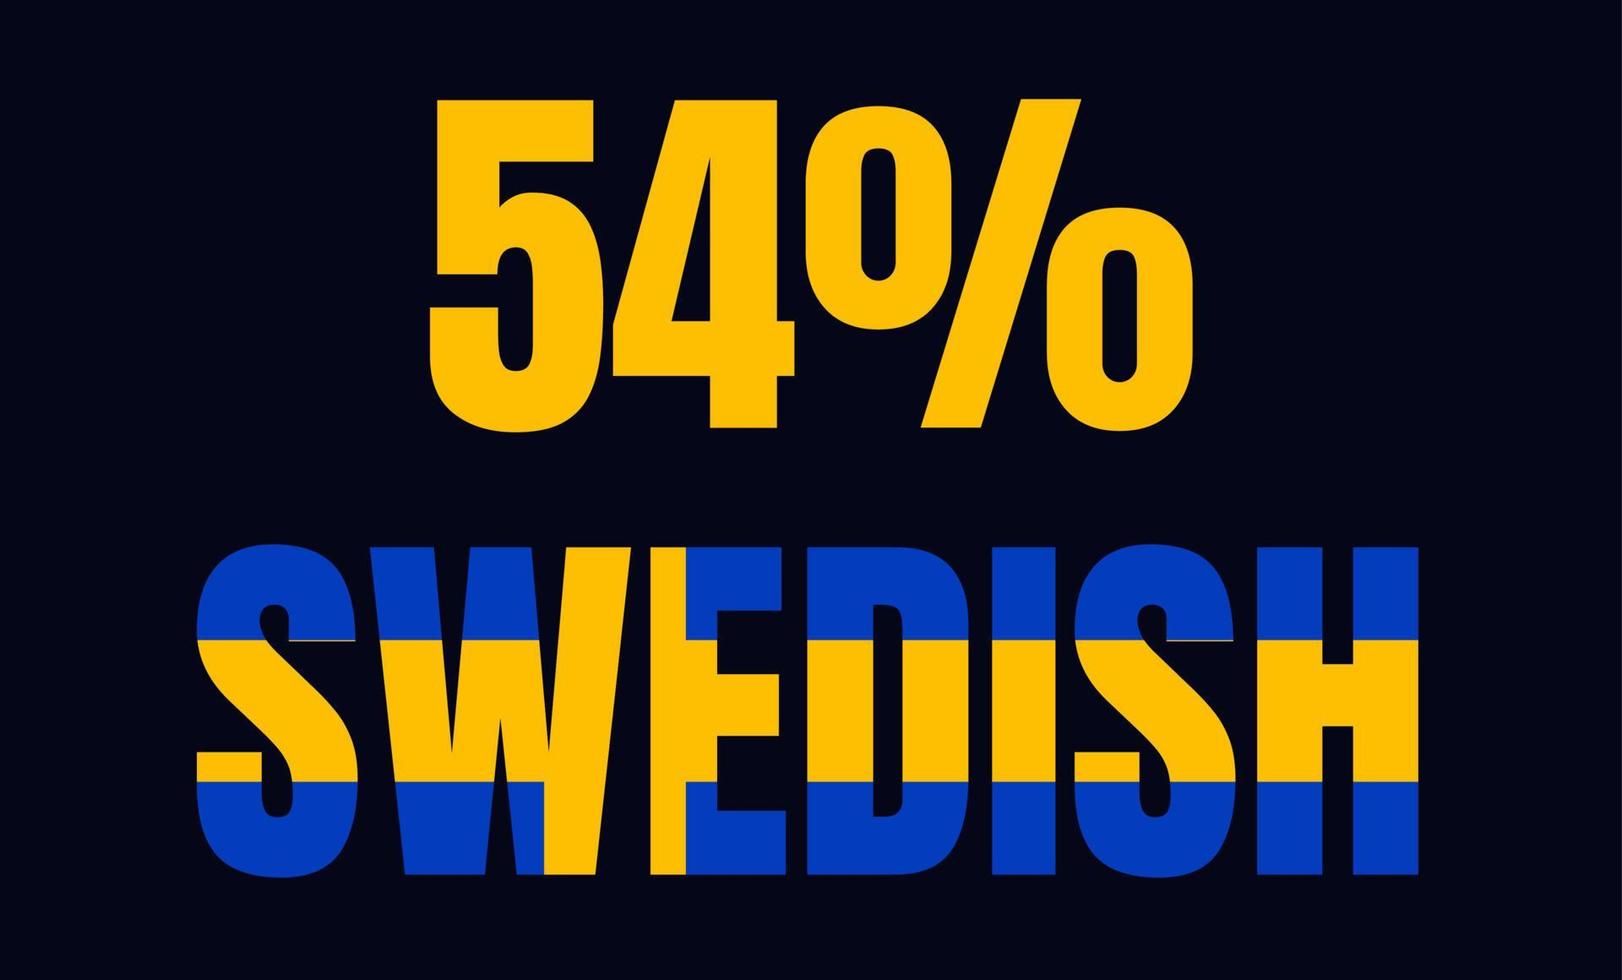 54-Prozent-schwedisches Zeichenetikett, Vektorgrafik mit fantastischer Schriftart und blau-gelber Farbe vektor